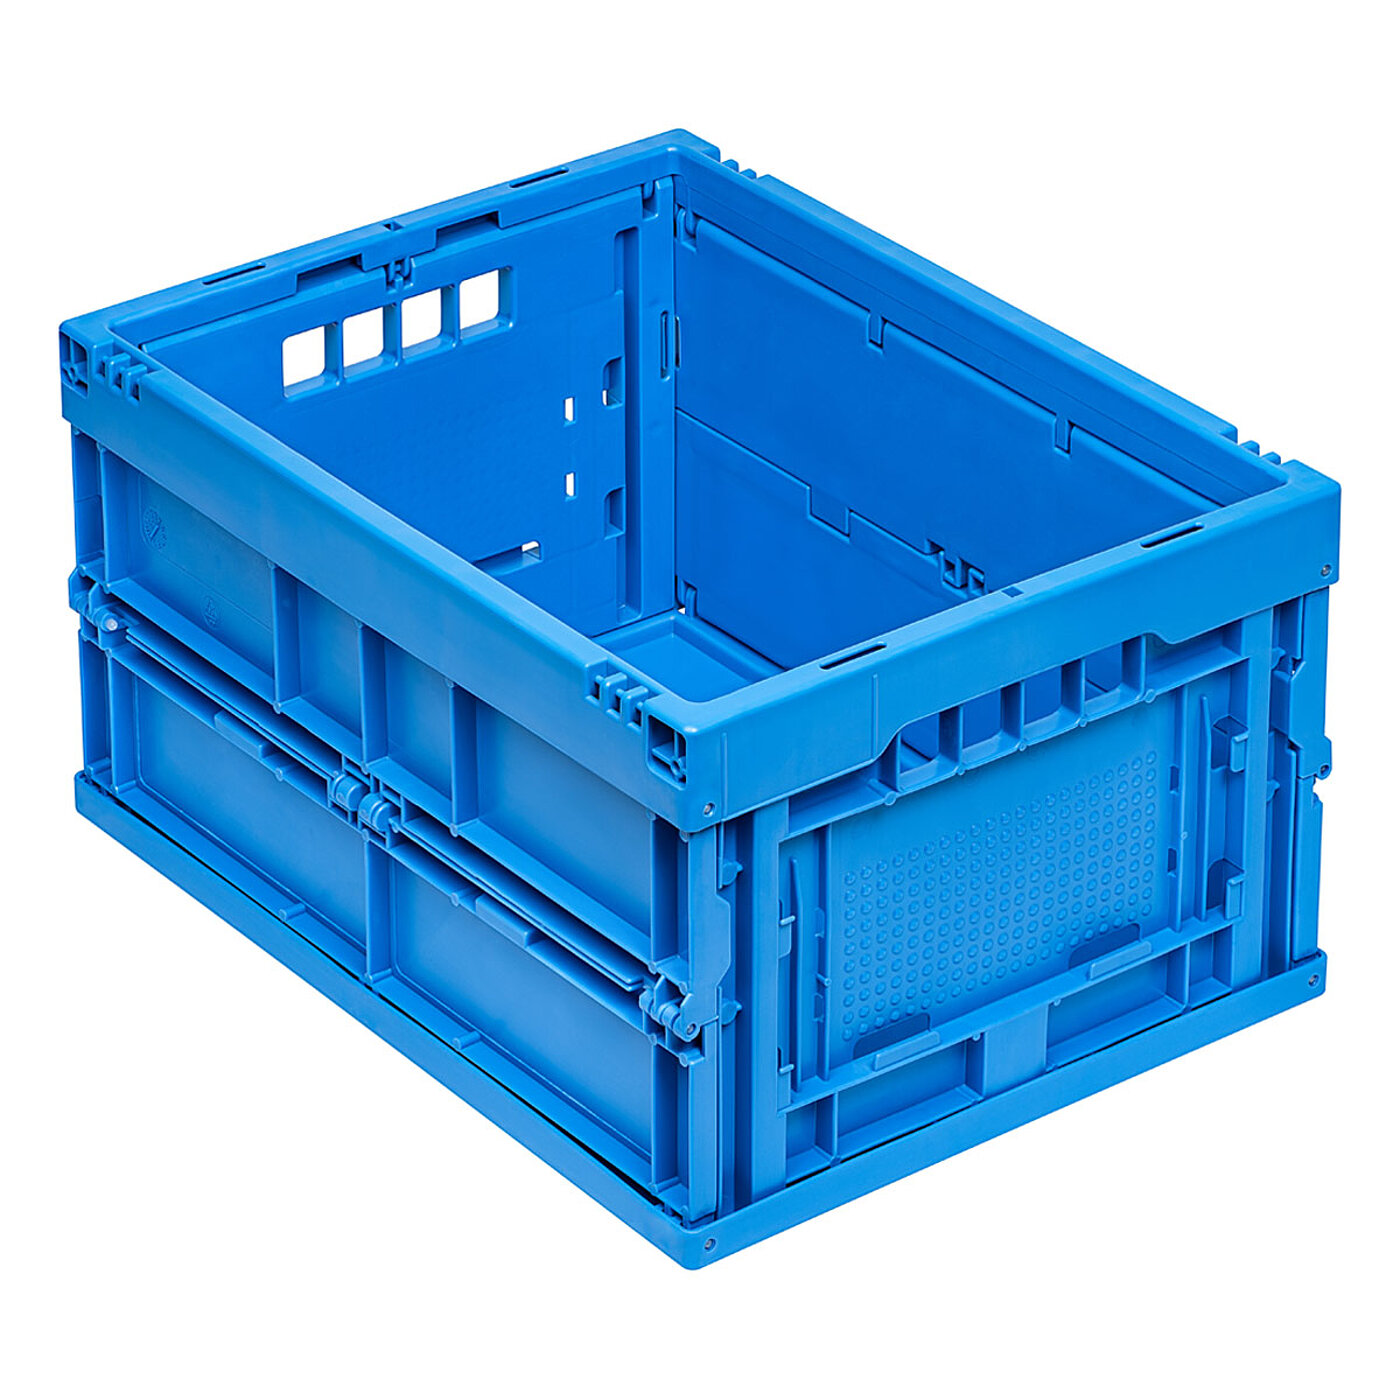 eine blaue Faltbox aus Kunststoff in Schrägansicht, freigestellt auf weißem Hintergrund